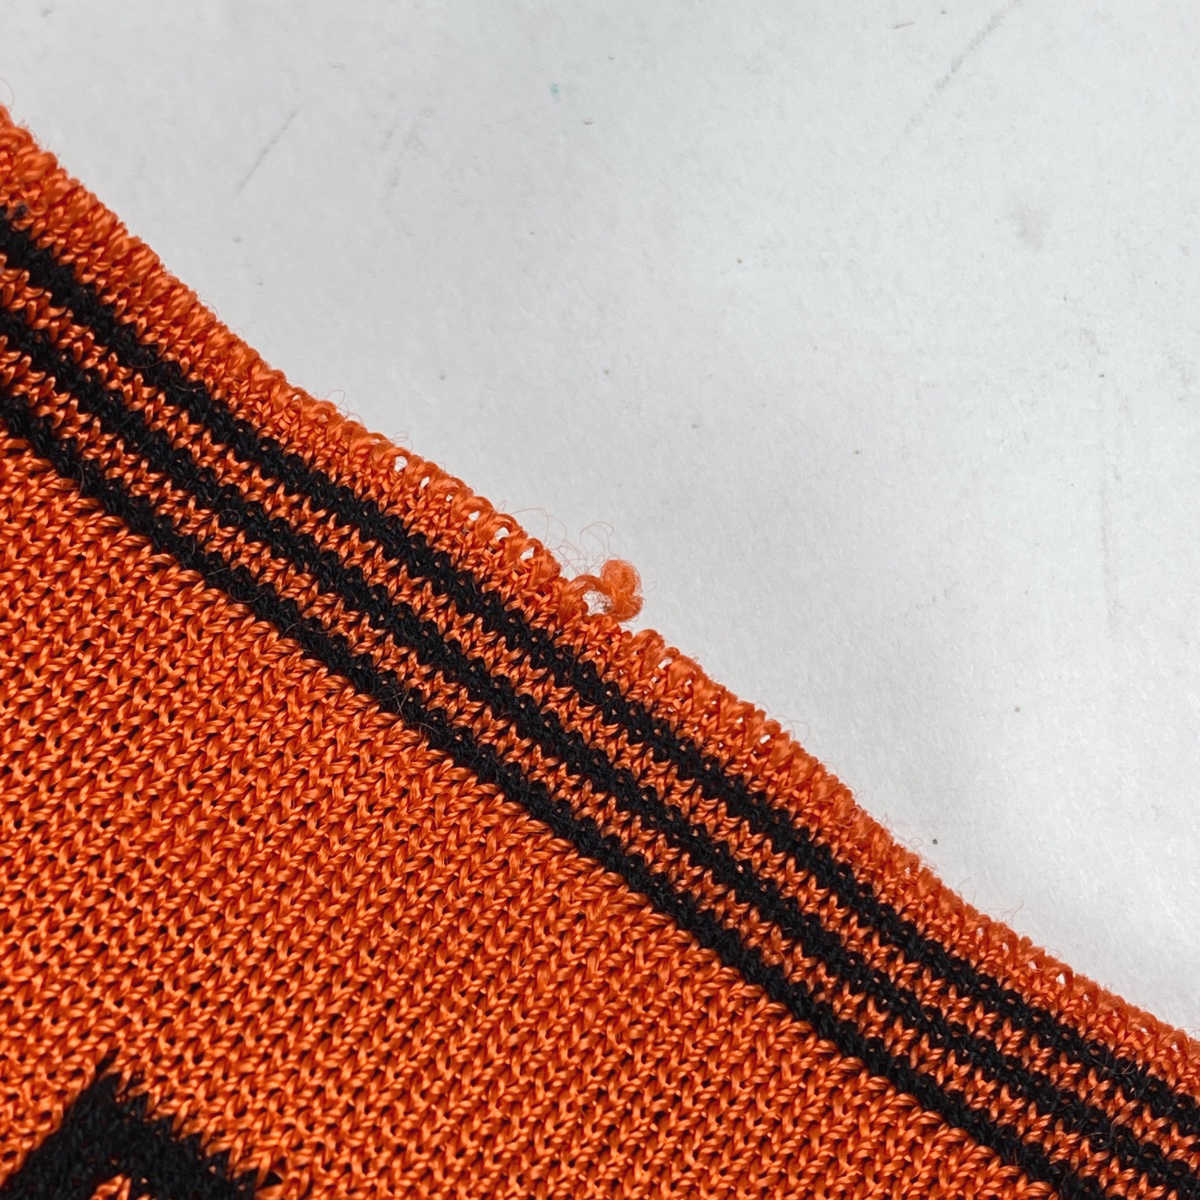  Fendi FENDI Logo кардиган FF рисунок боковой разрез tops кардиган искусственный шелк хлопок orange черный женский б/у 